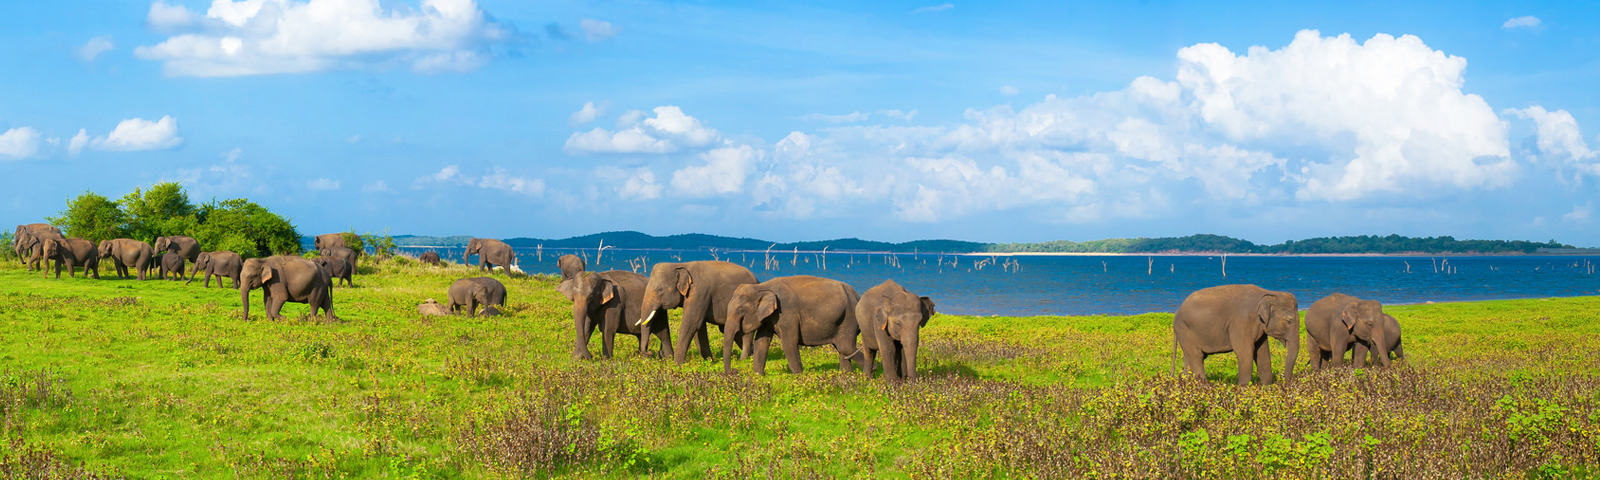 Somawathiya National Park in Sri Lanka